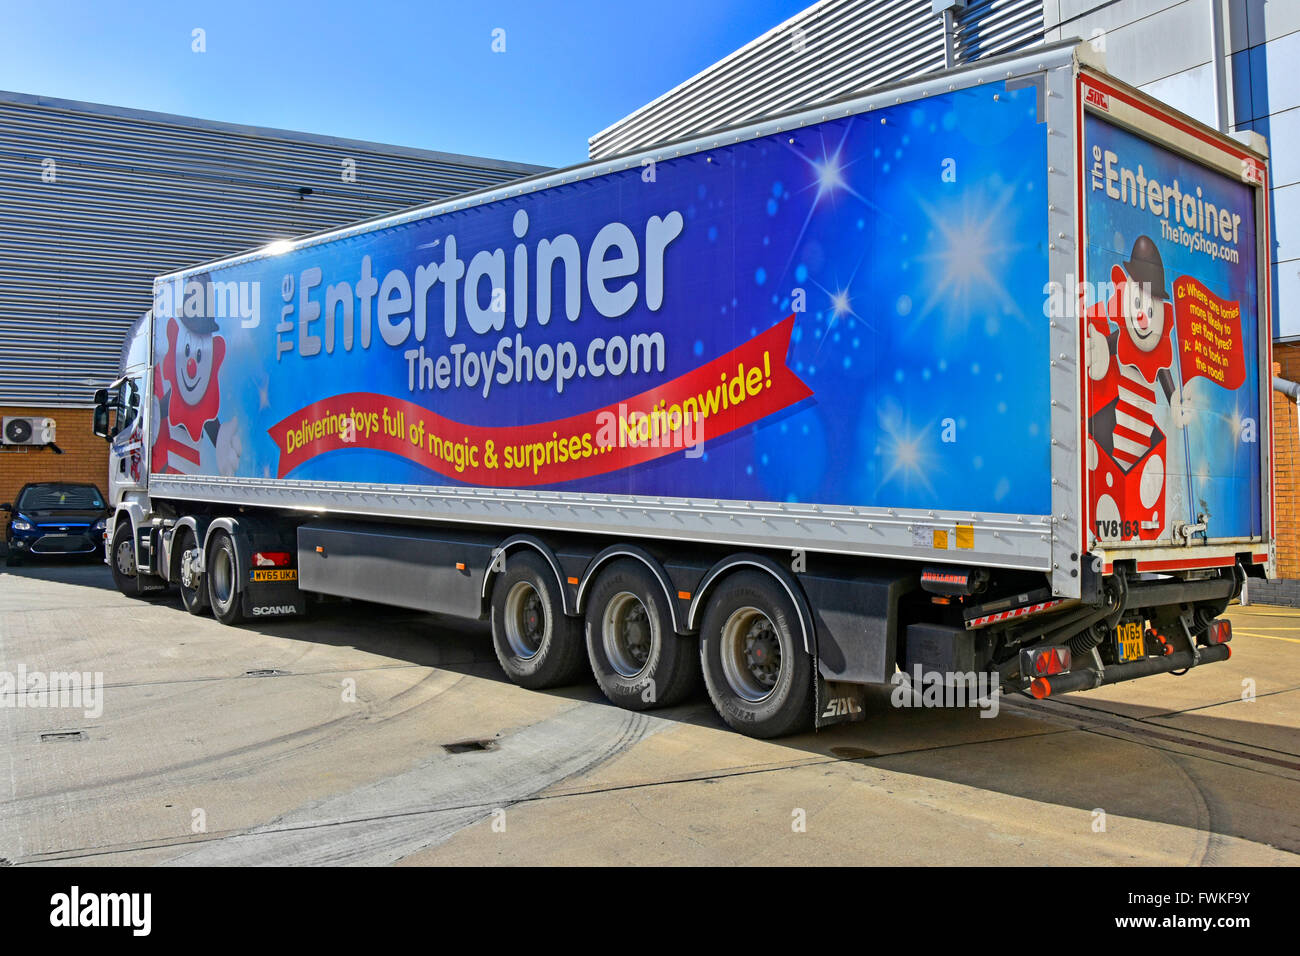 Logistique de la chaîne d'approvisionnement Entertainer Toy Shop hgv camion de livraison articulé camion et remorque garés à l'arrière de la boutique de jouets À Romford East Londres, Royaume-Uni Banque D'Images